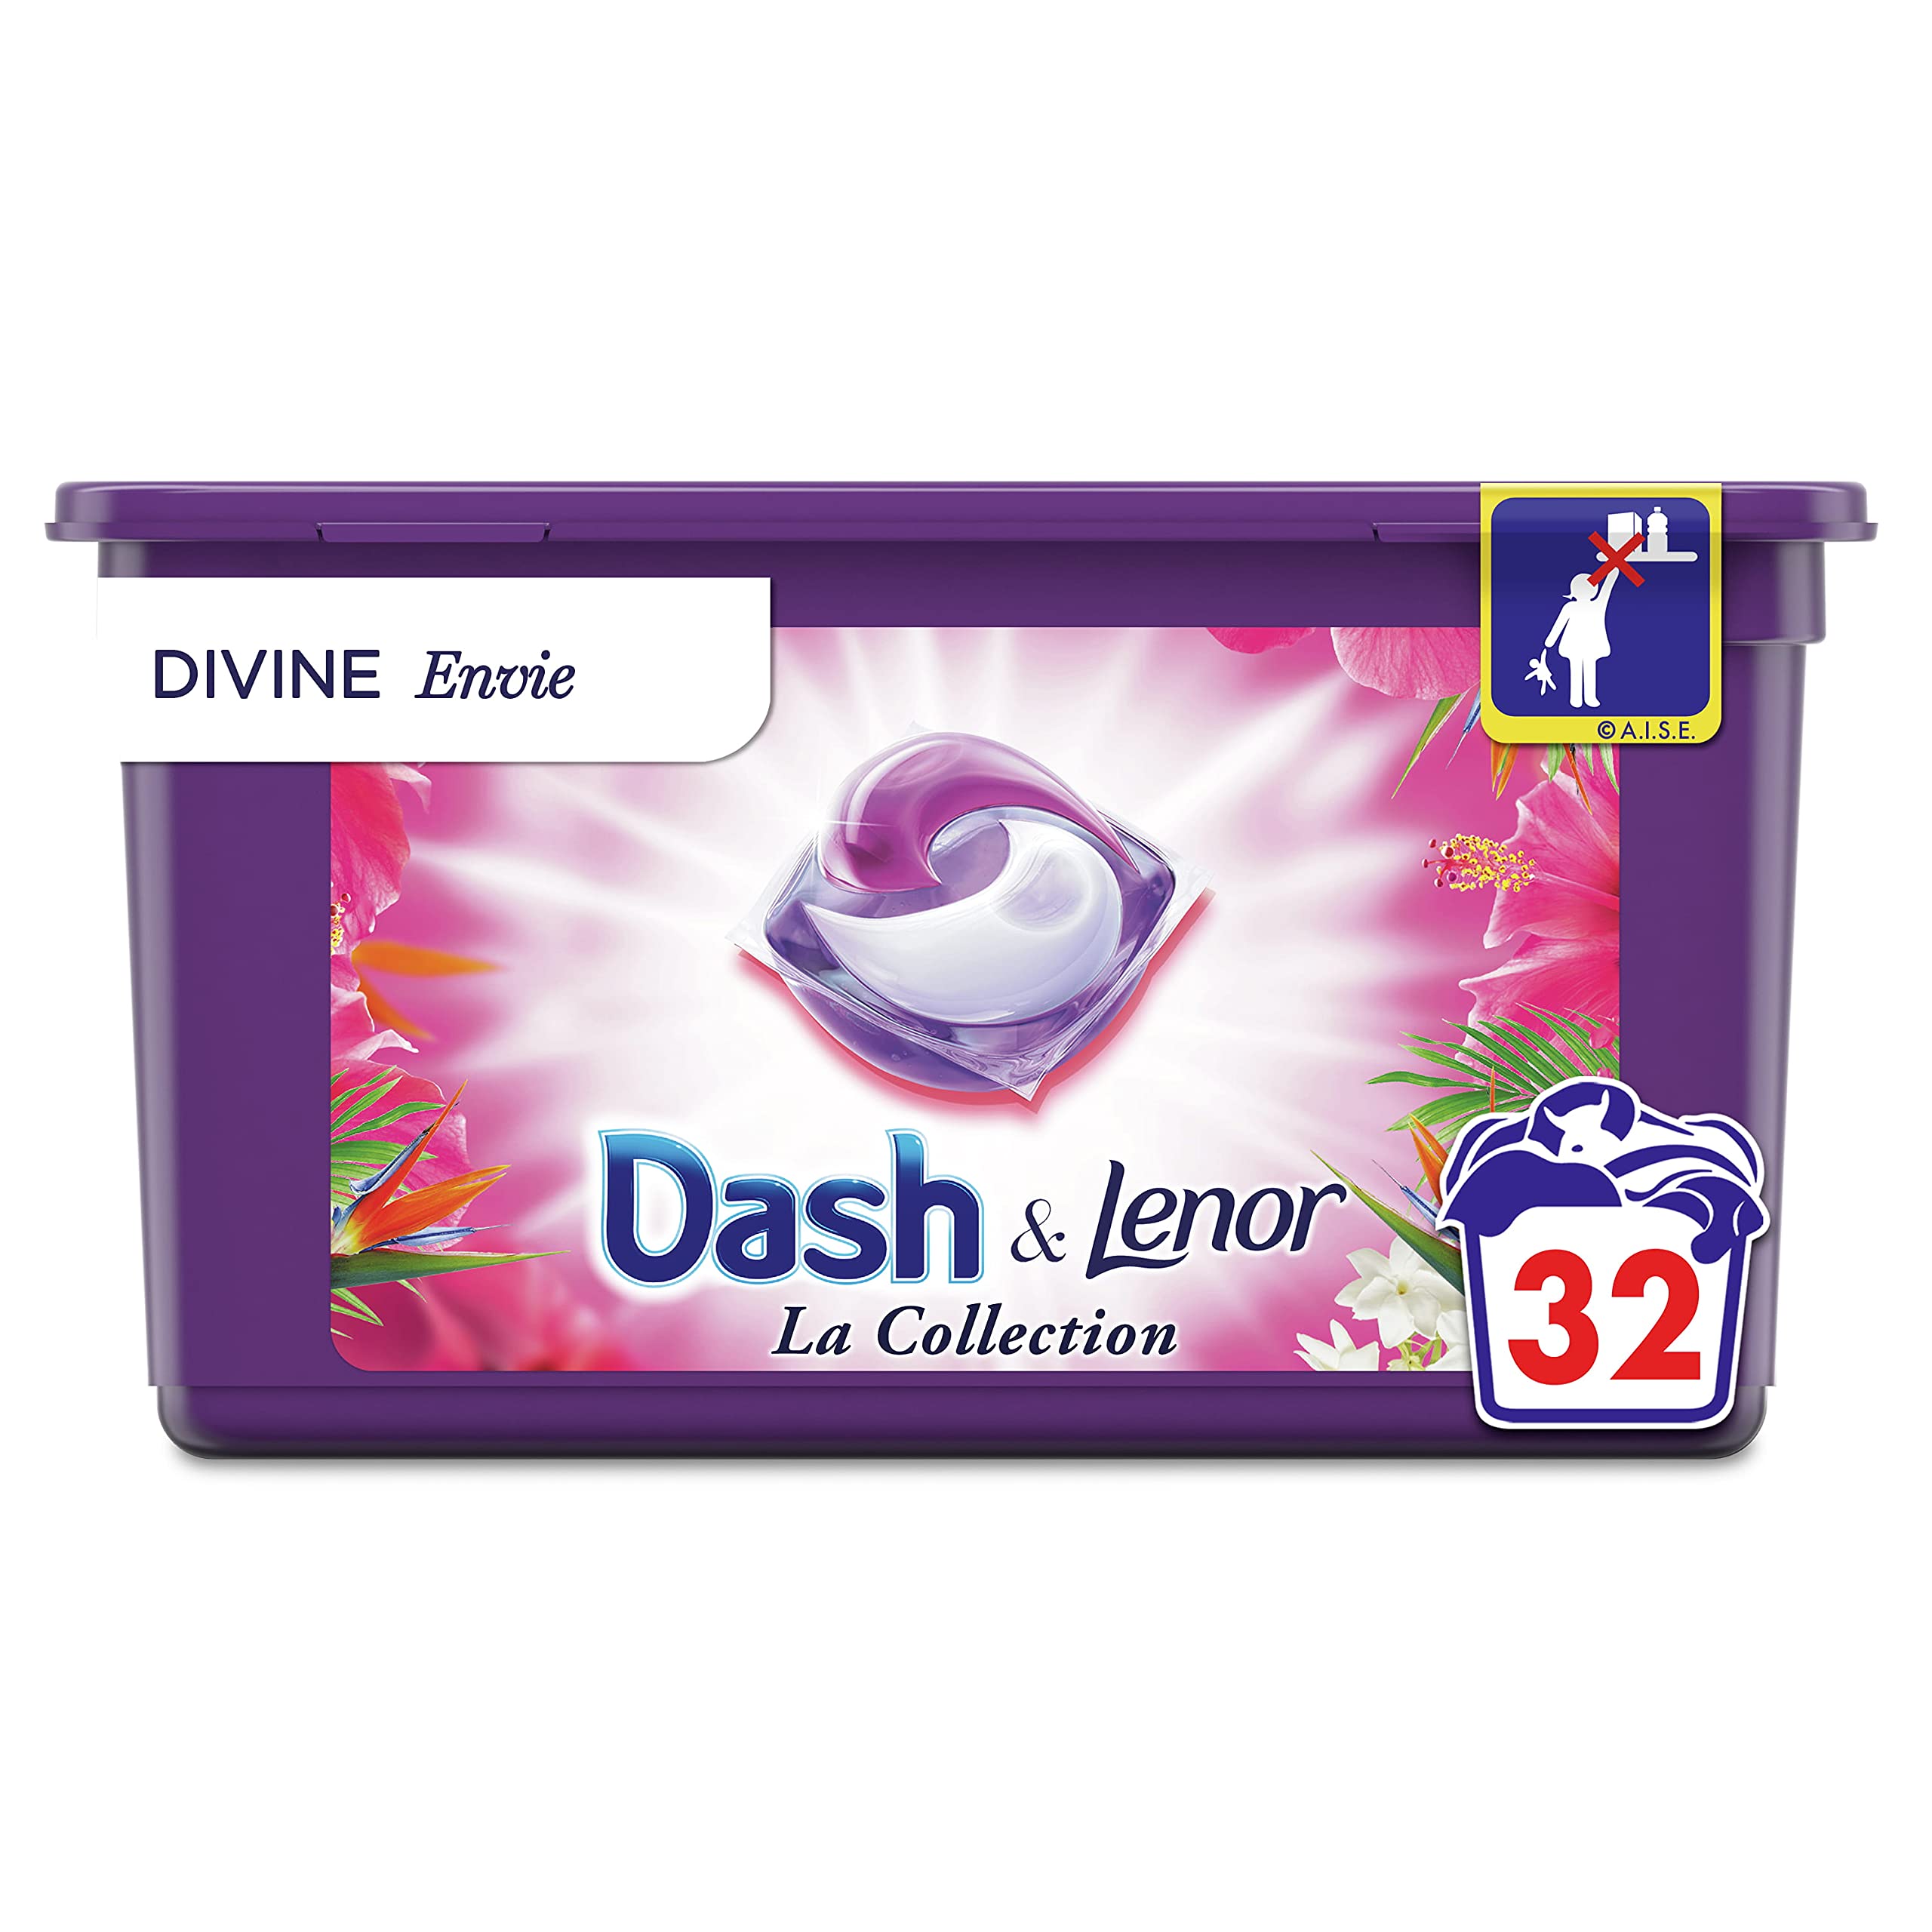 Dash Dash Allin1 Pods Kollektion Divine Envie Waschmittel in Kapseln, 32 Waschgänge, Divine Envie (1 Stück)